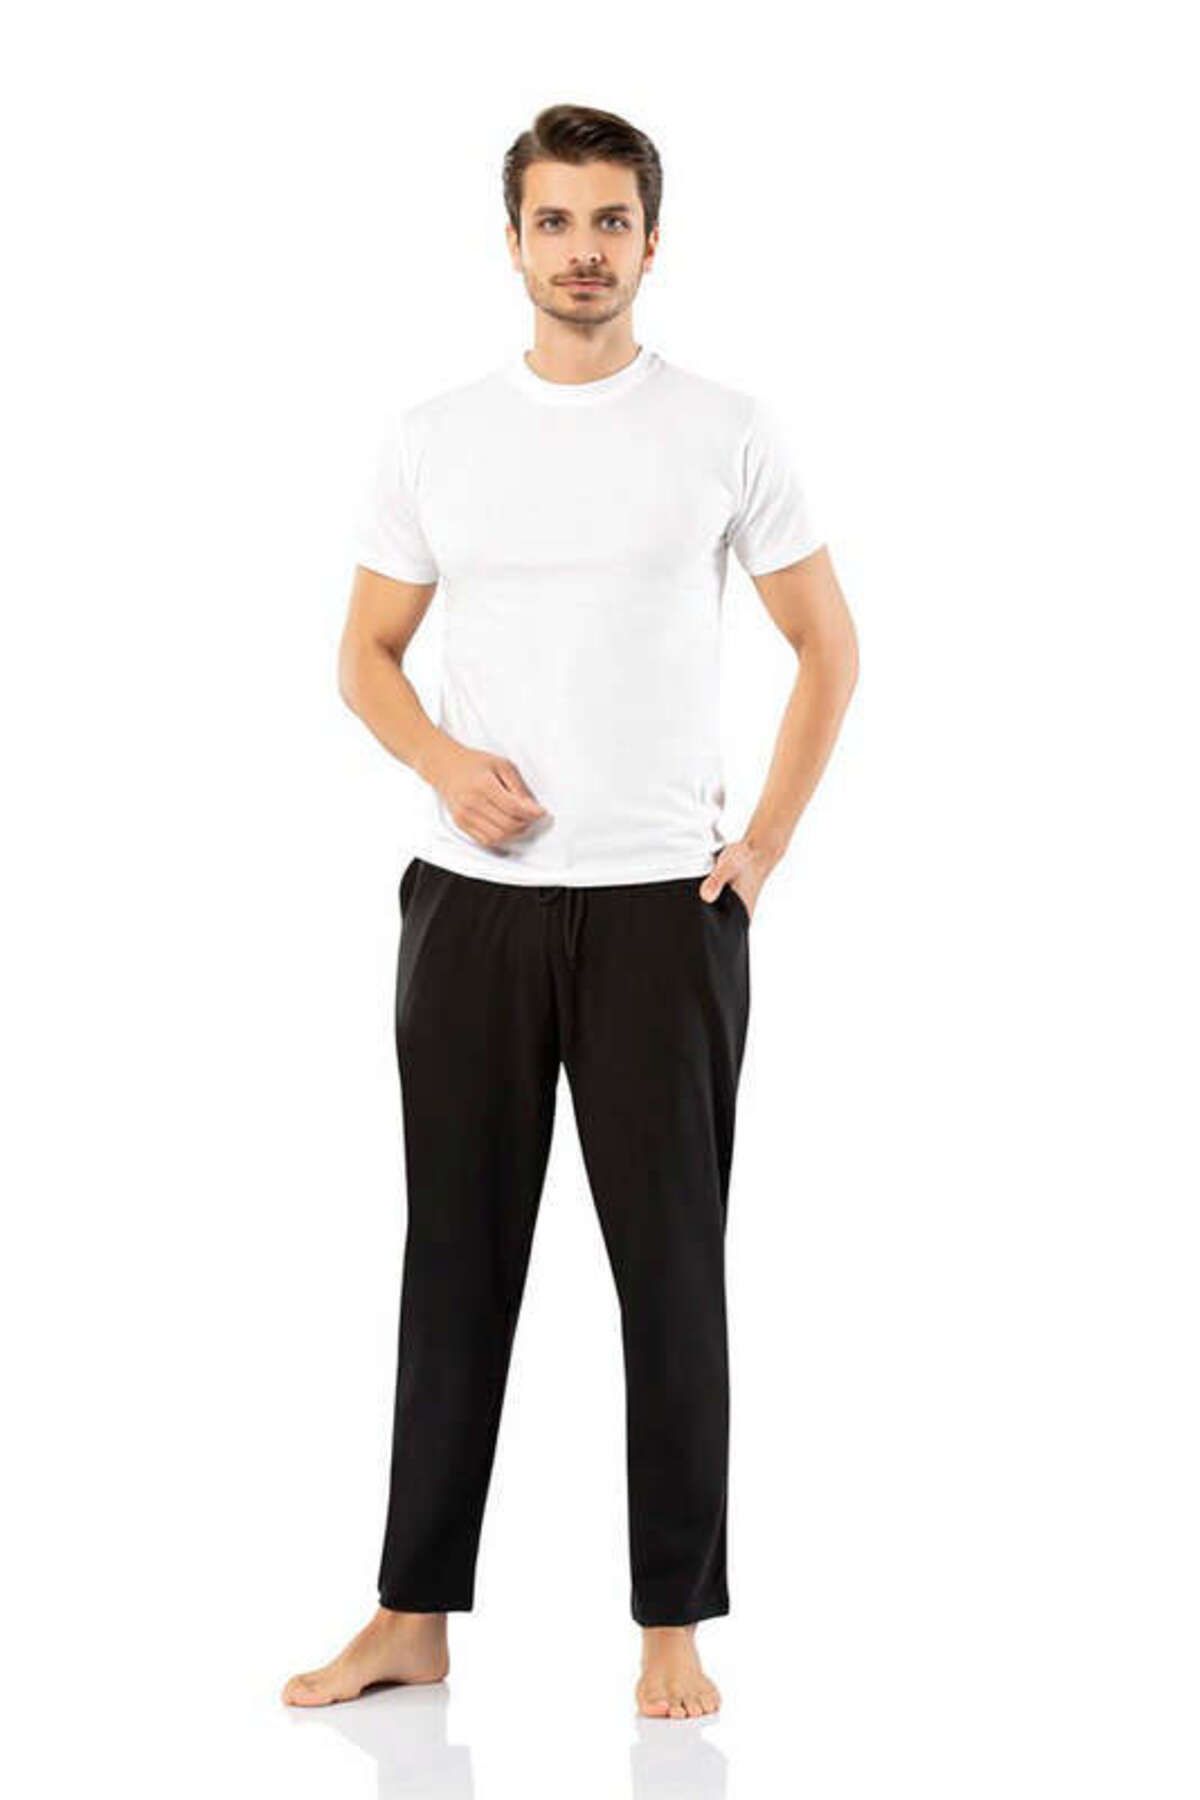 Weweus Siyah Erdem İç Giyim Erkek Kışlık Eşofman Alt Renk Siyah Beden L 139036